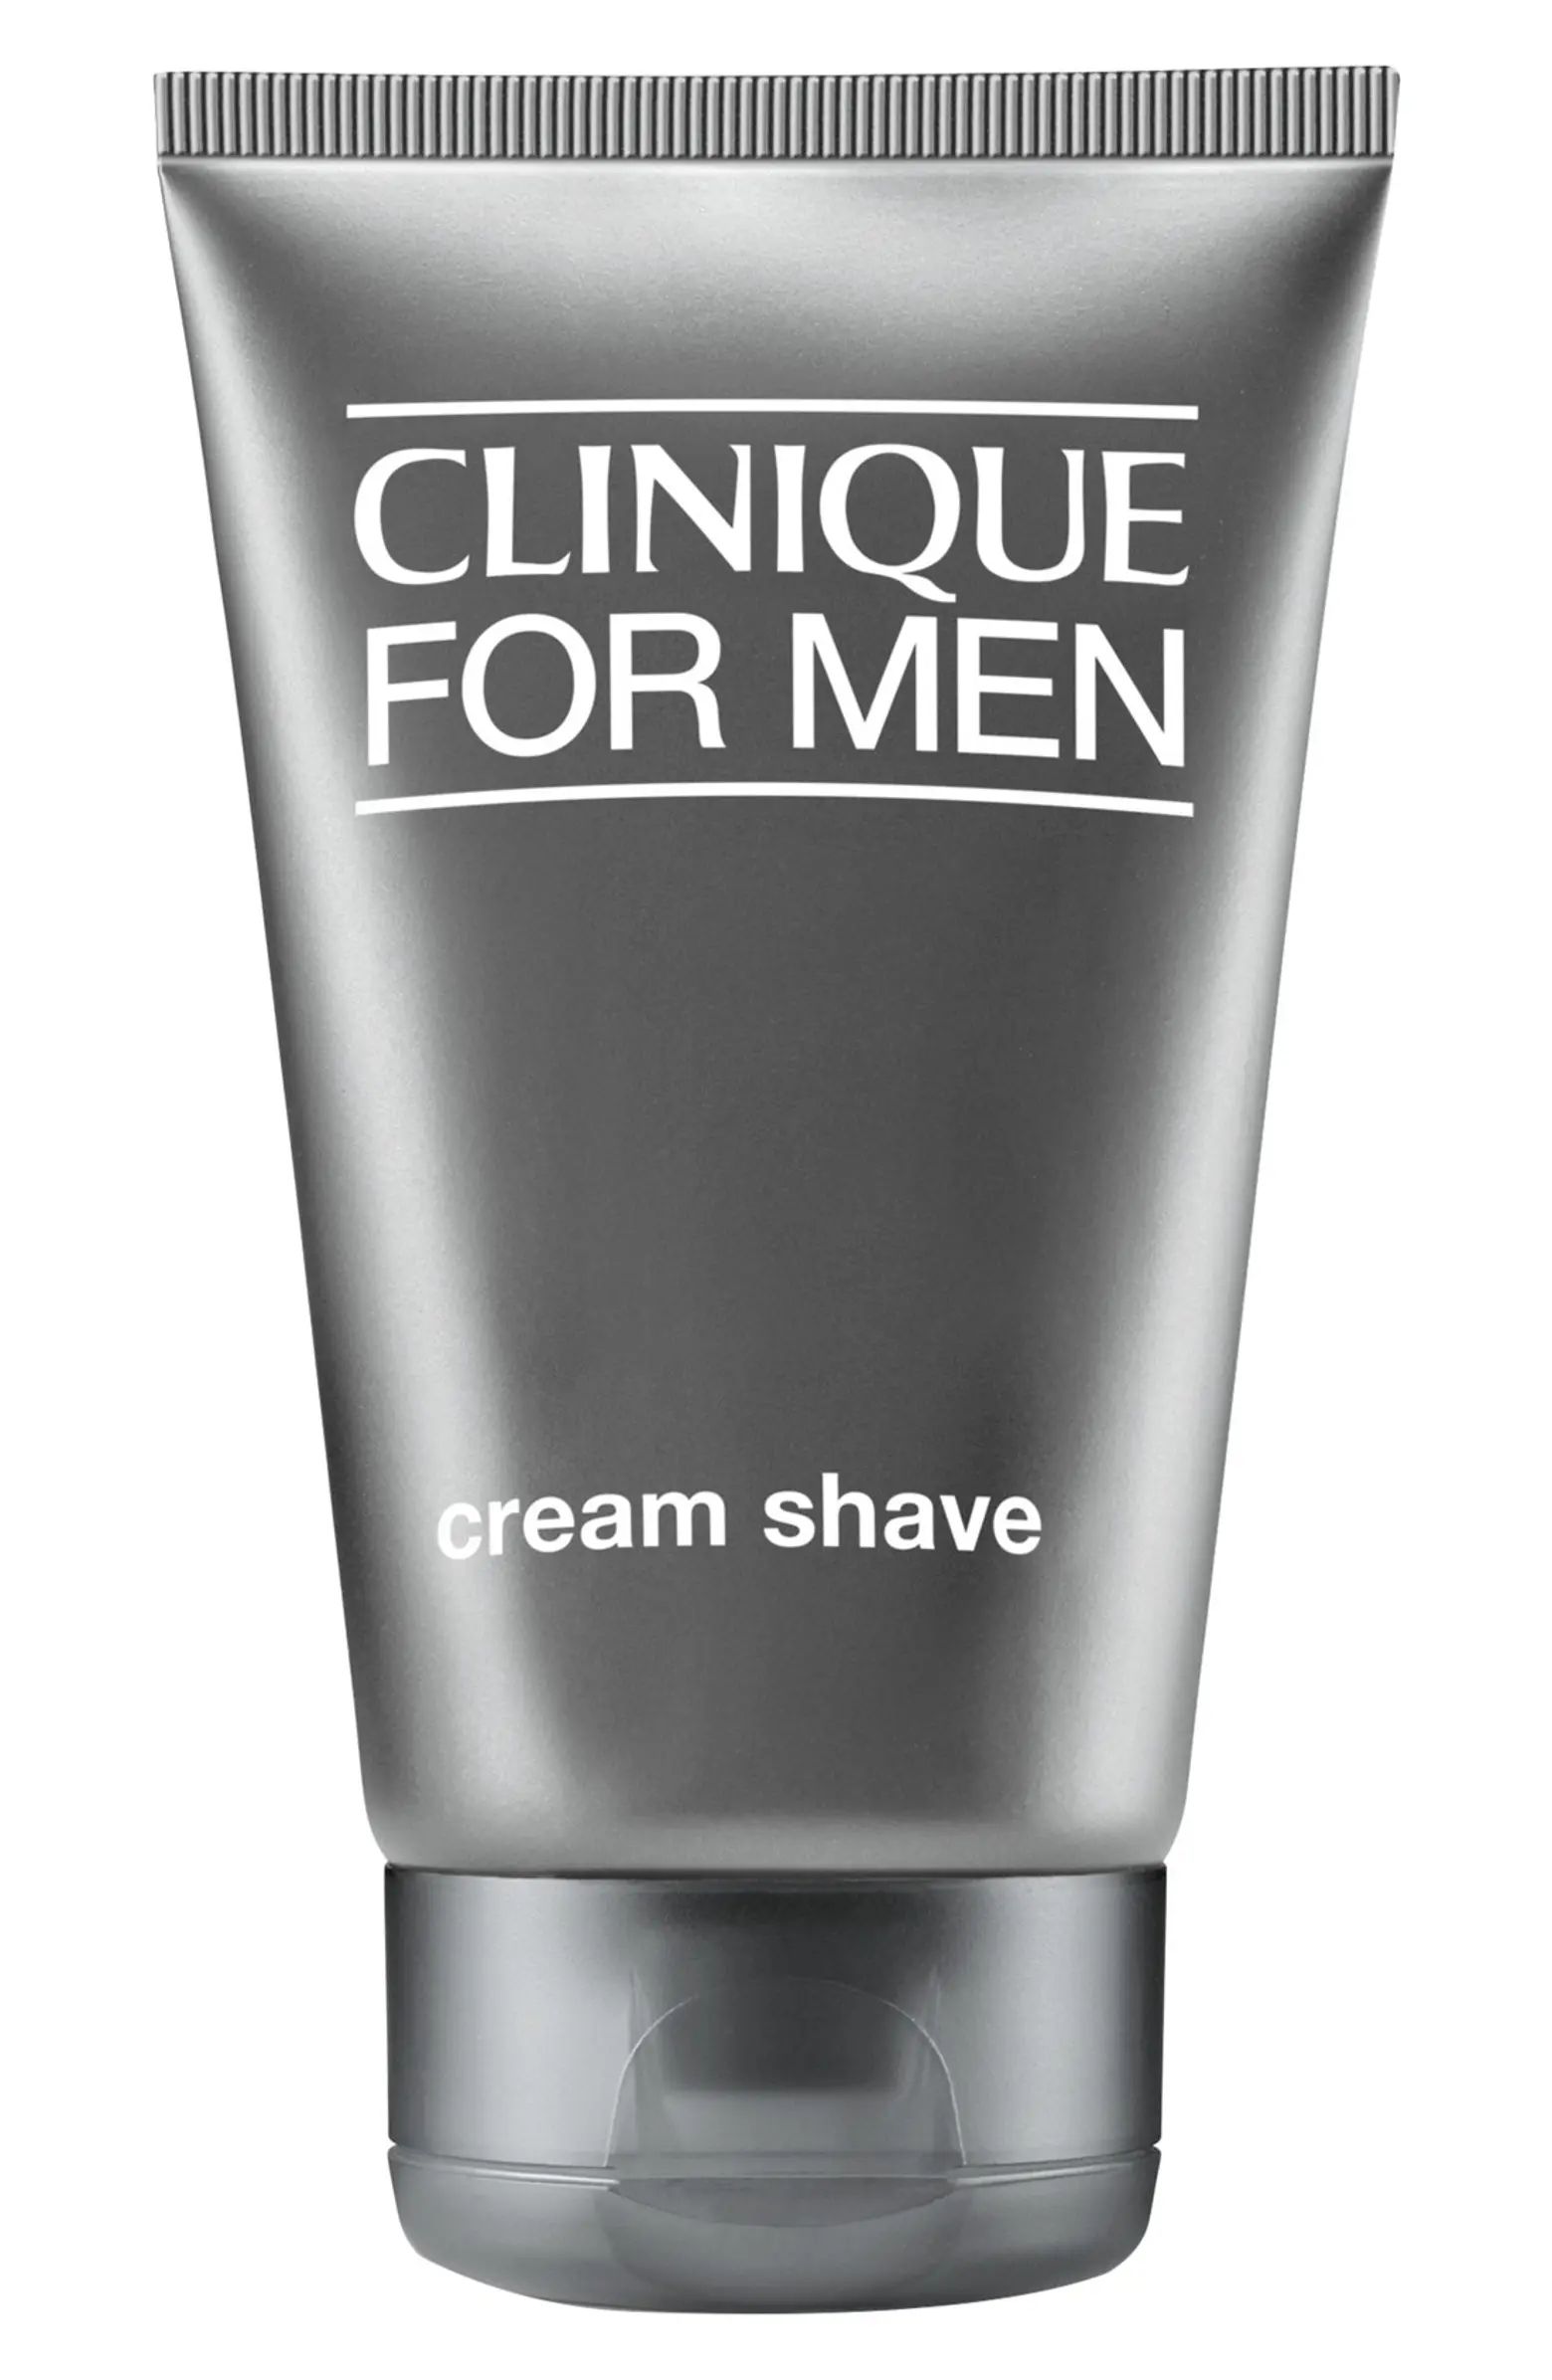 Clinique for Men Cream Shave | Nordstromrack | Nordstrom Rack